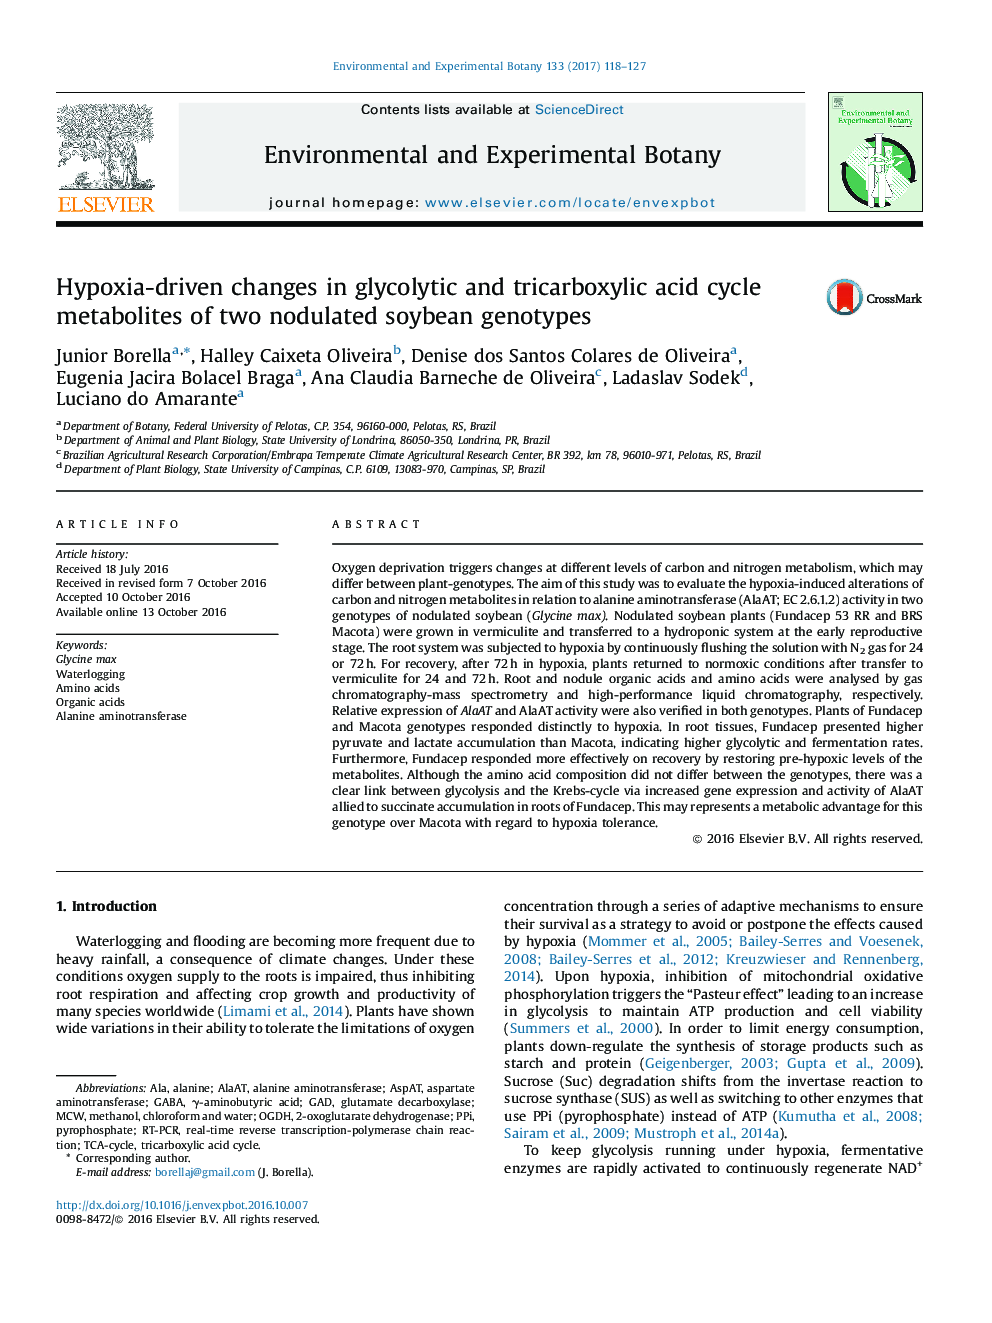 تغییرات ناشی از هیپوکسی در متابولیت های چرخه گلیکولیک و تریک بوکسیلیک دو ژنوتیپ سویا